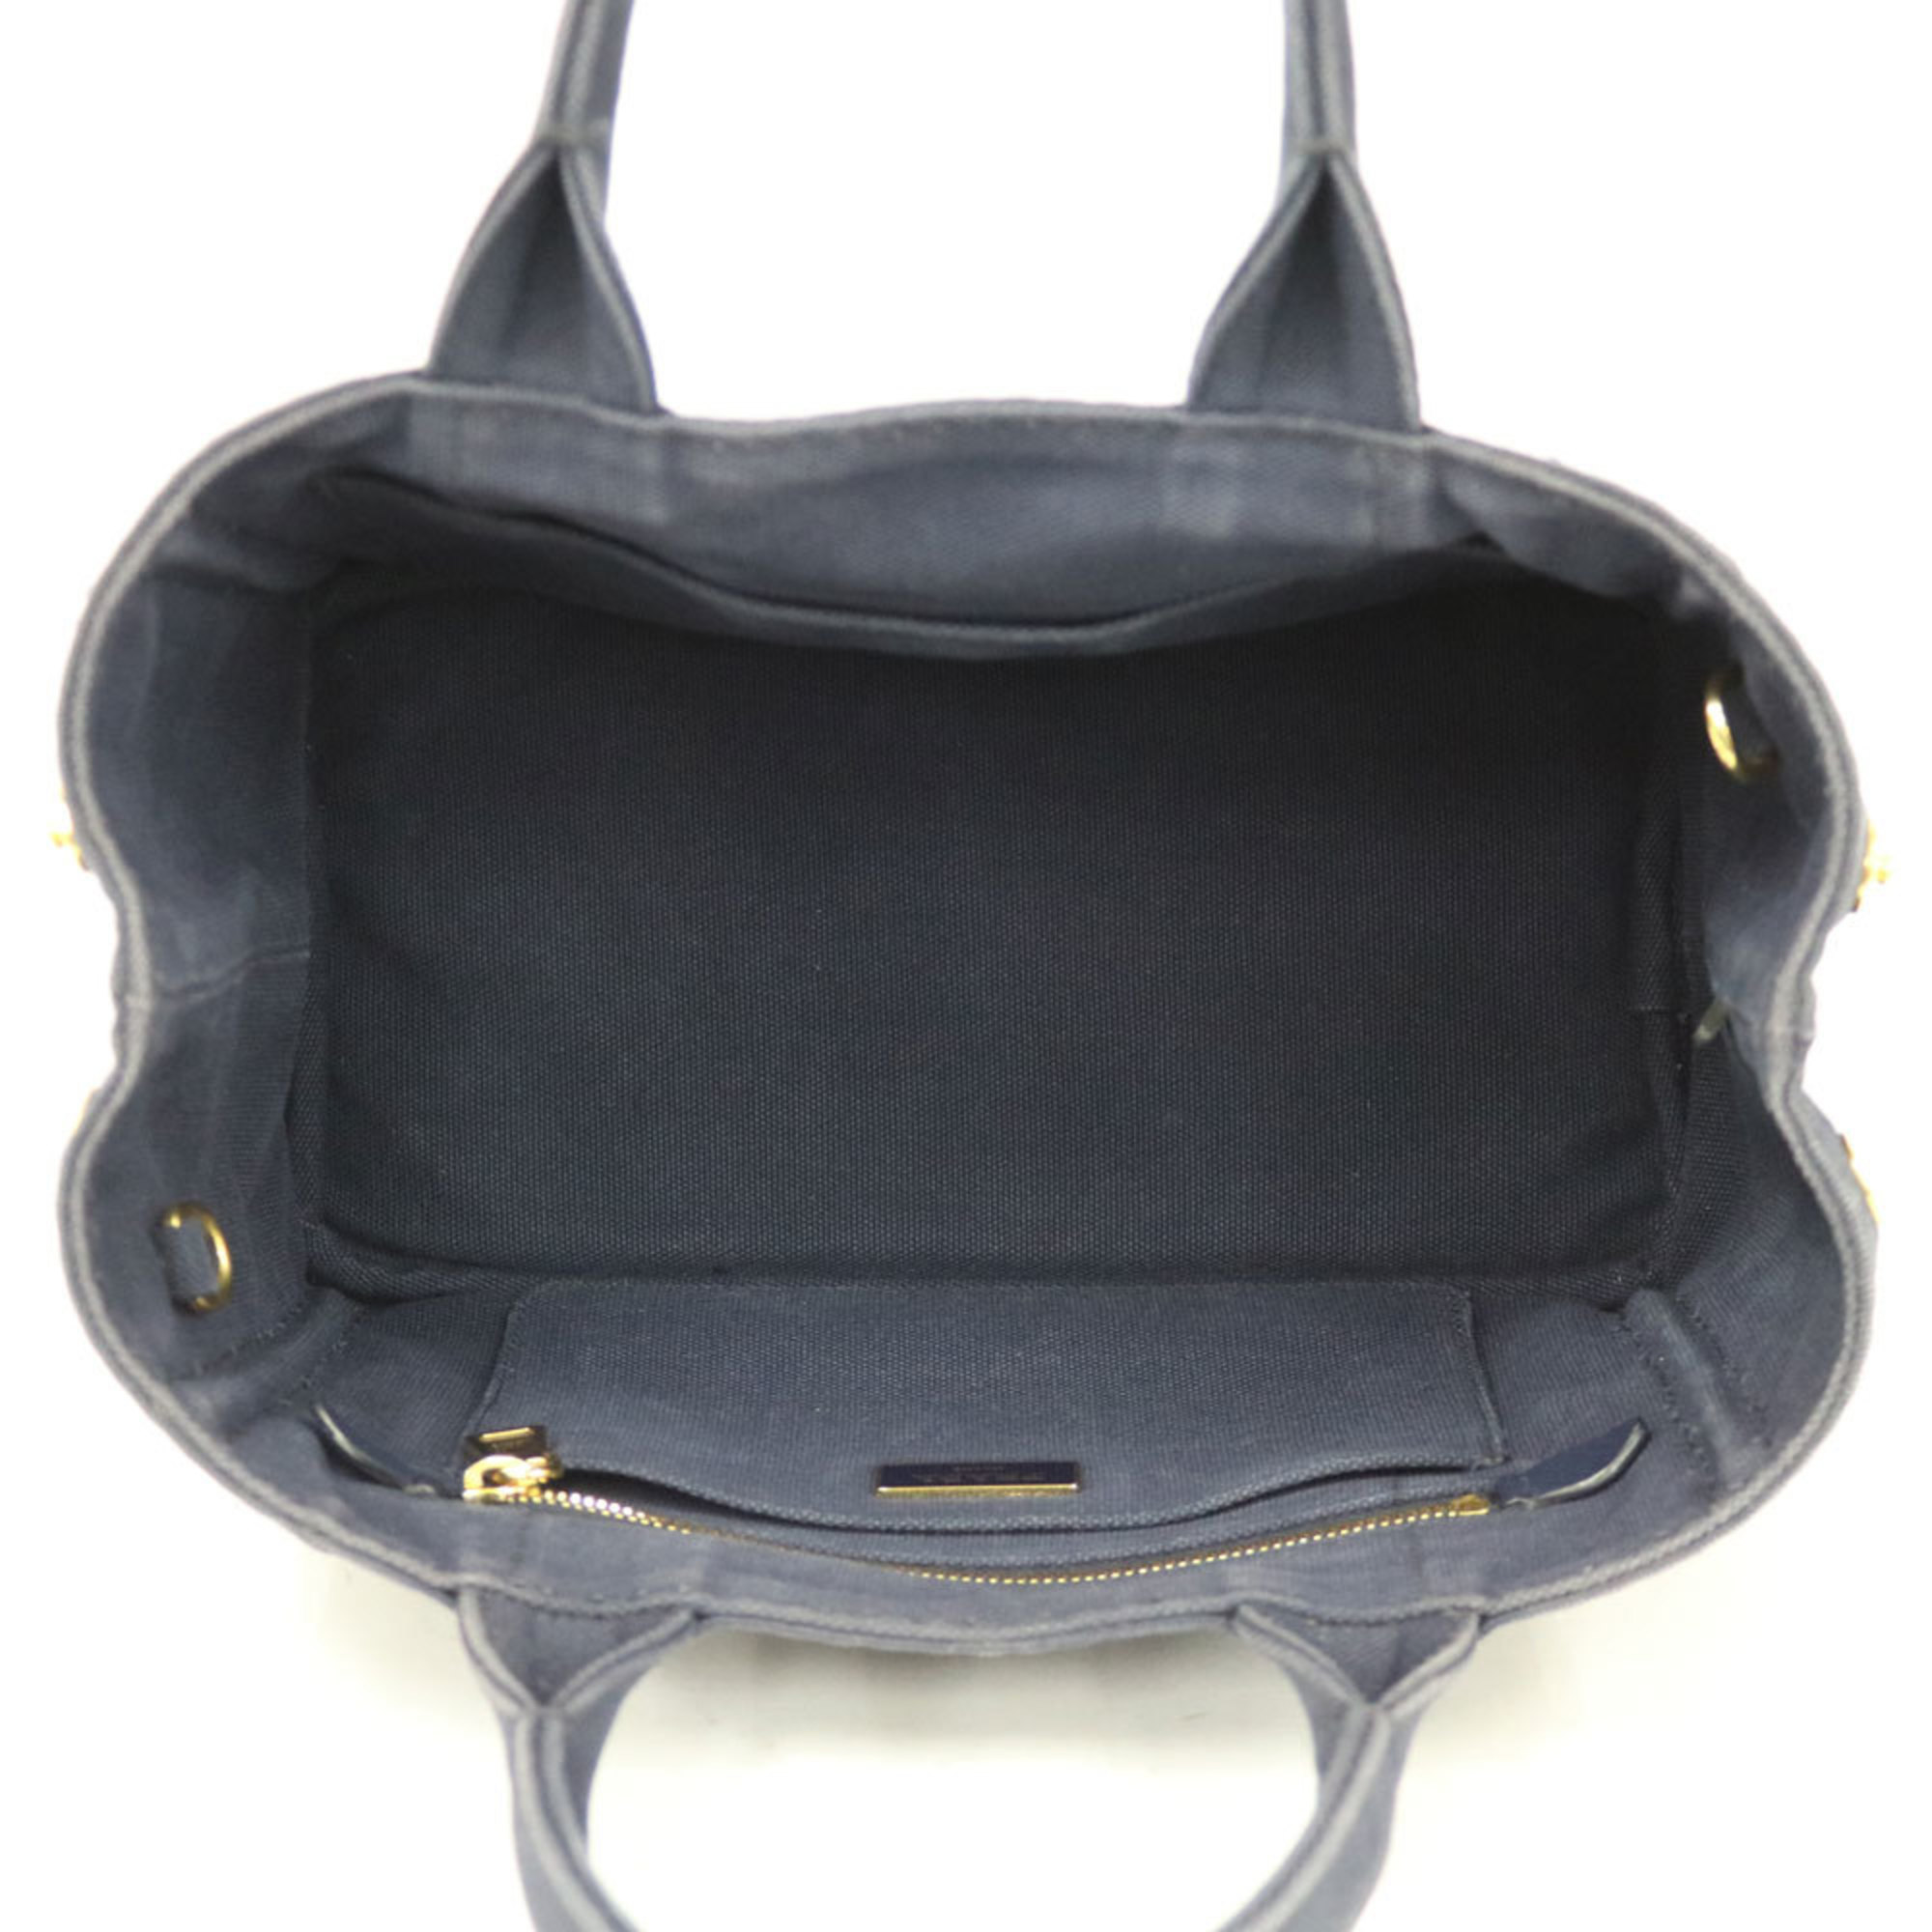 Prada Canapato PM Shoulder Bag Canvas Navy Ladies PRADA Handbag BRB01000000002363